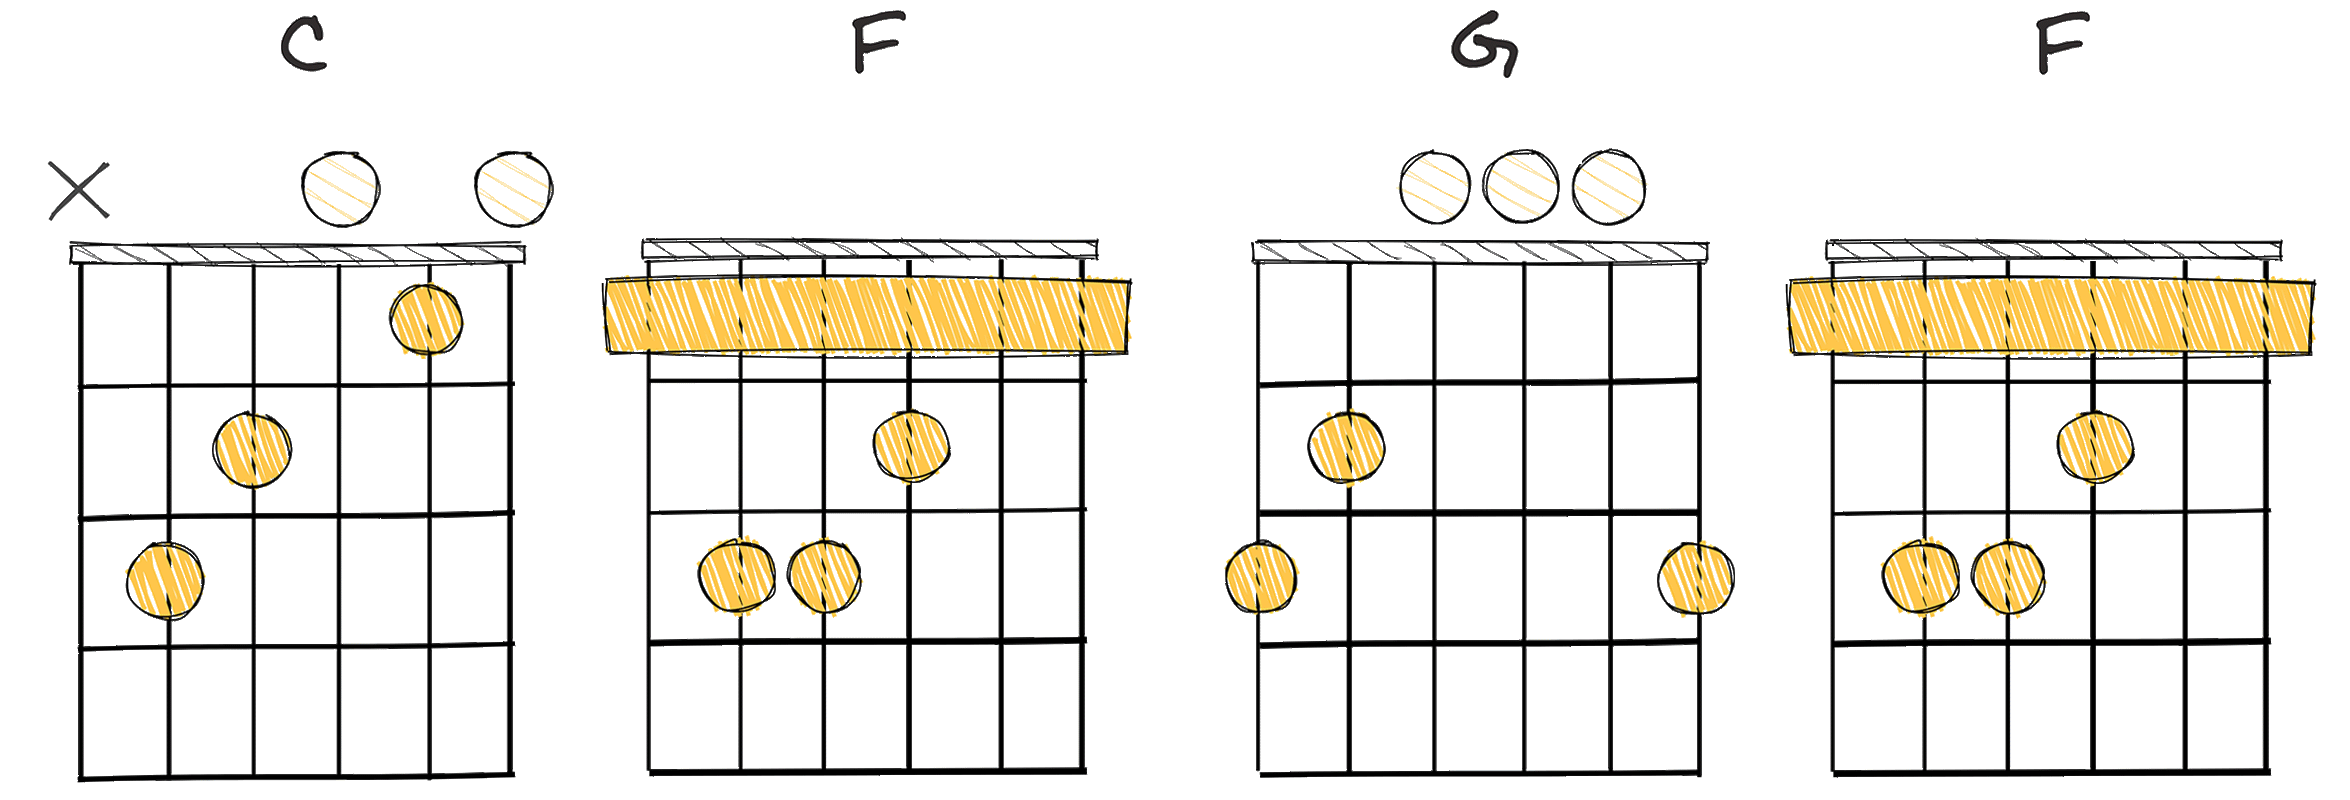 I - IV - V - IV (1-4-5-4) chords diagram